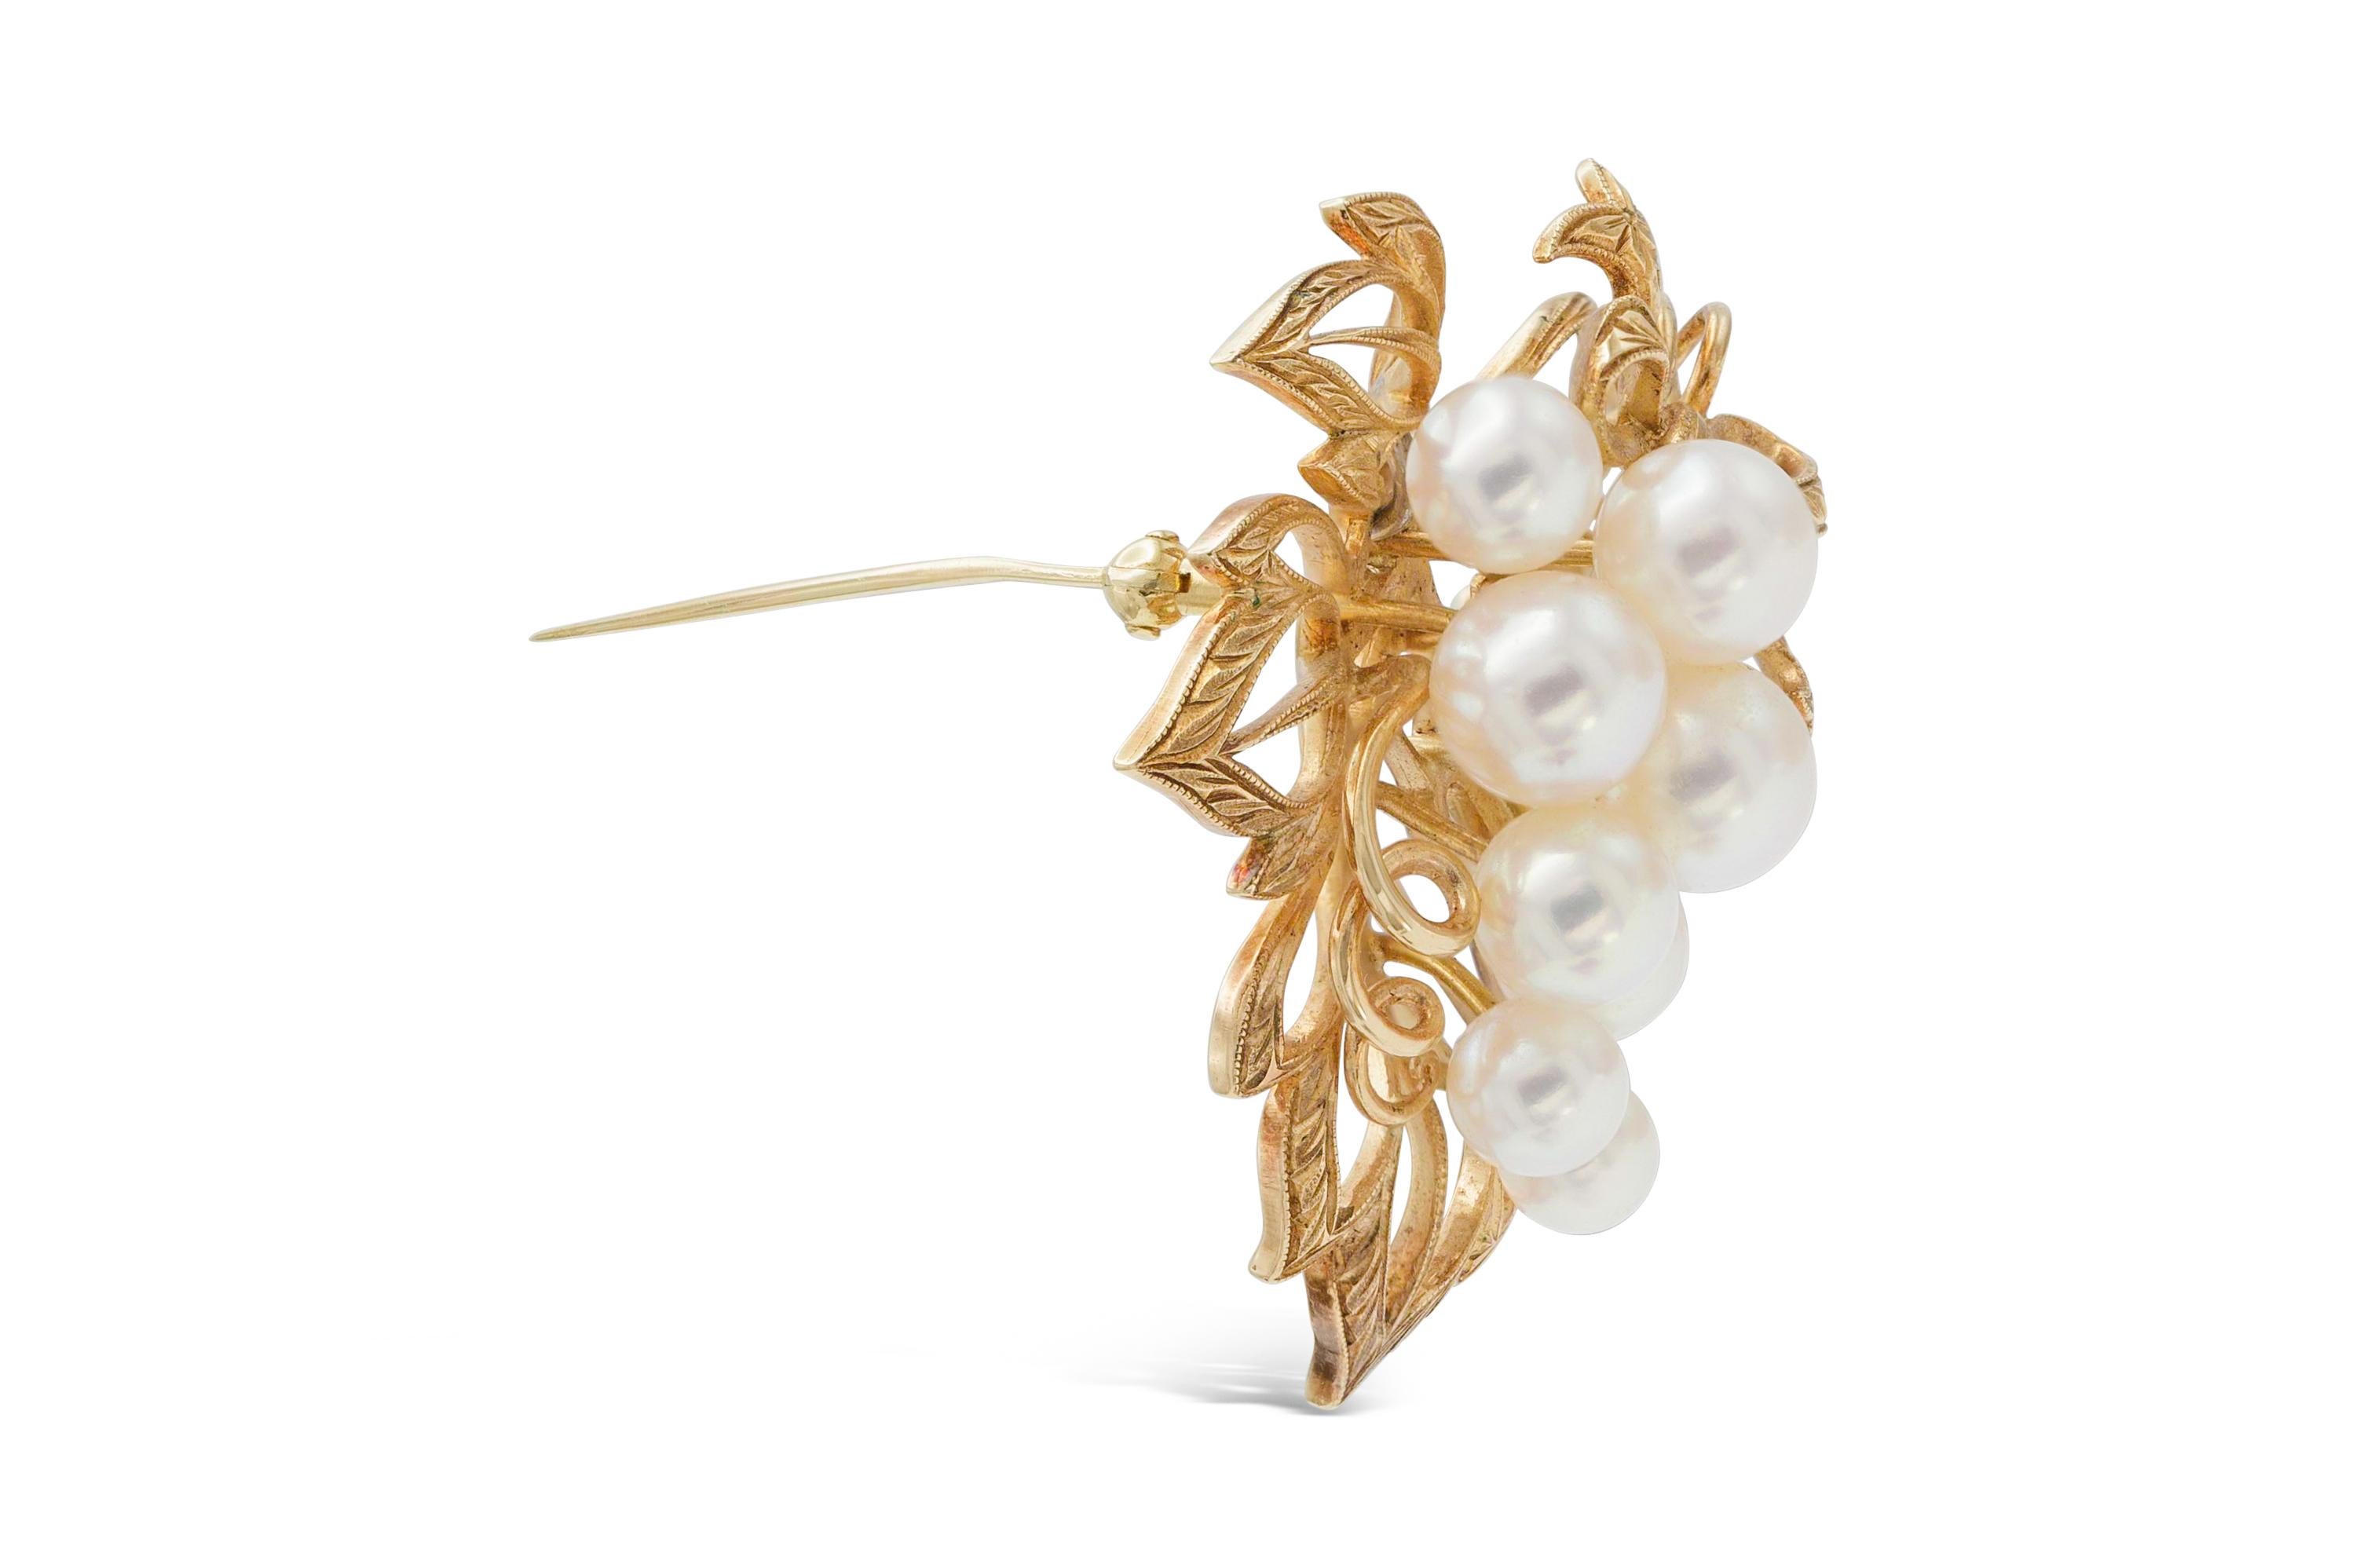 Finement confectionné en or jaune 14k avec des perles Akoya japonaises.
Signé par Mikimoto.